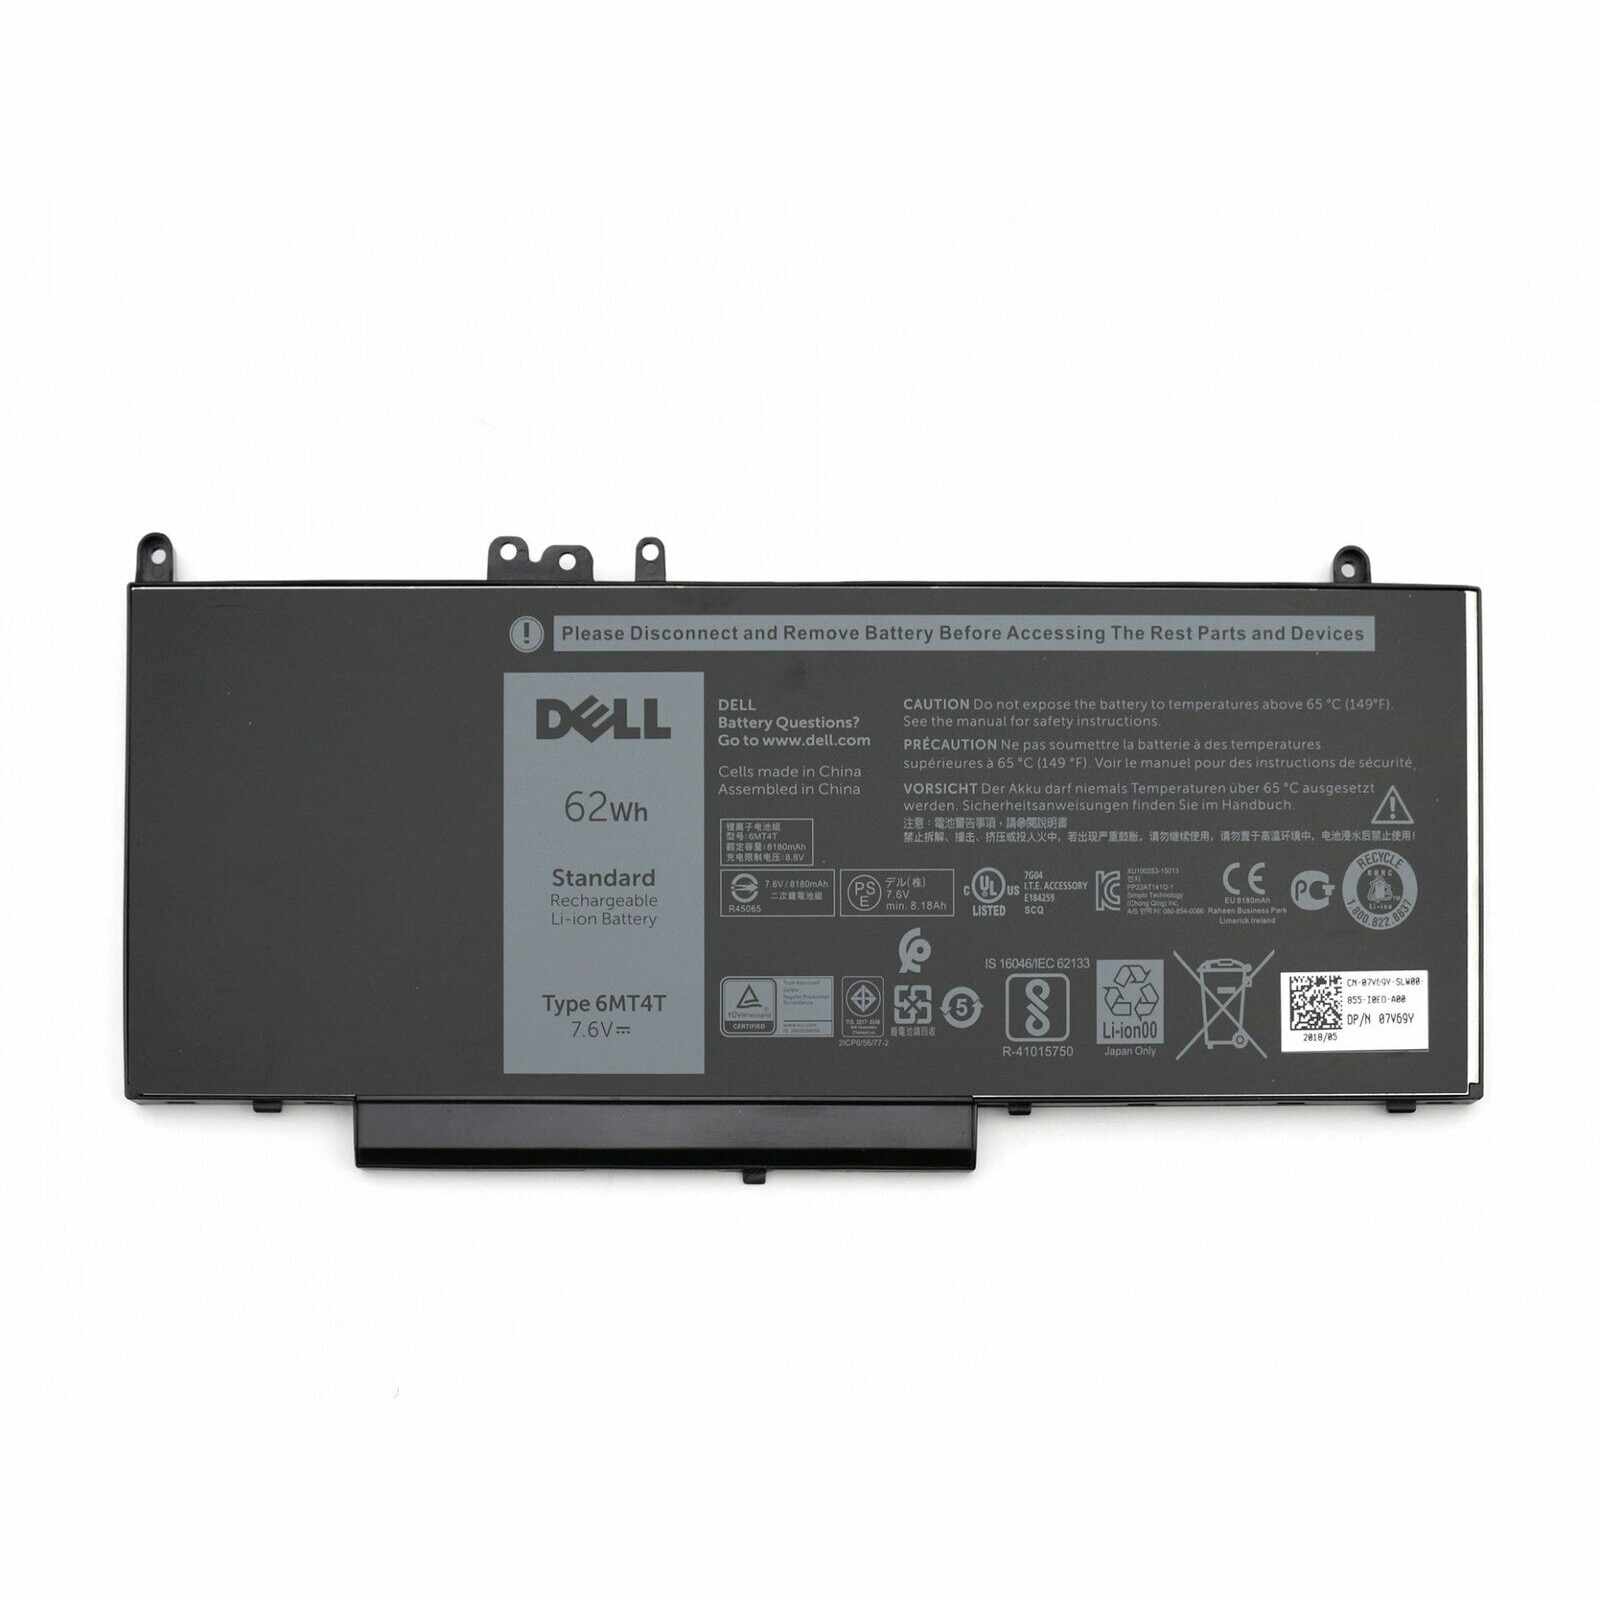 Baterie originala pentru laptop Dell Latitude E5270, Dell Latitude E5470, Dell Latitude E5570, Dell Precision 15 3510, type Dell 6MT4T, 62Wh